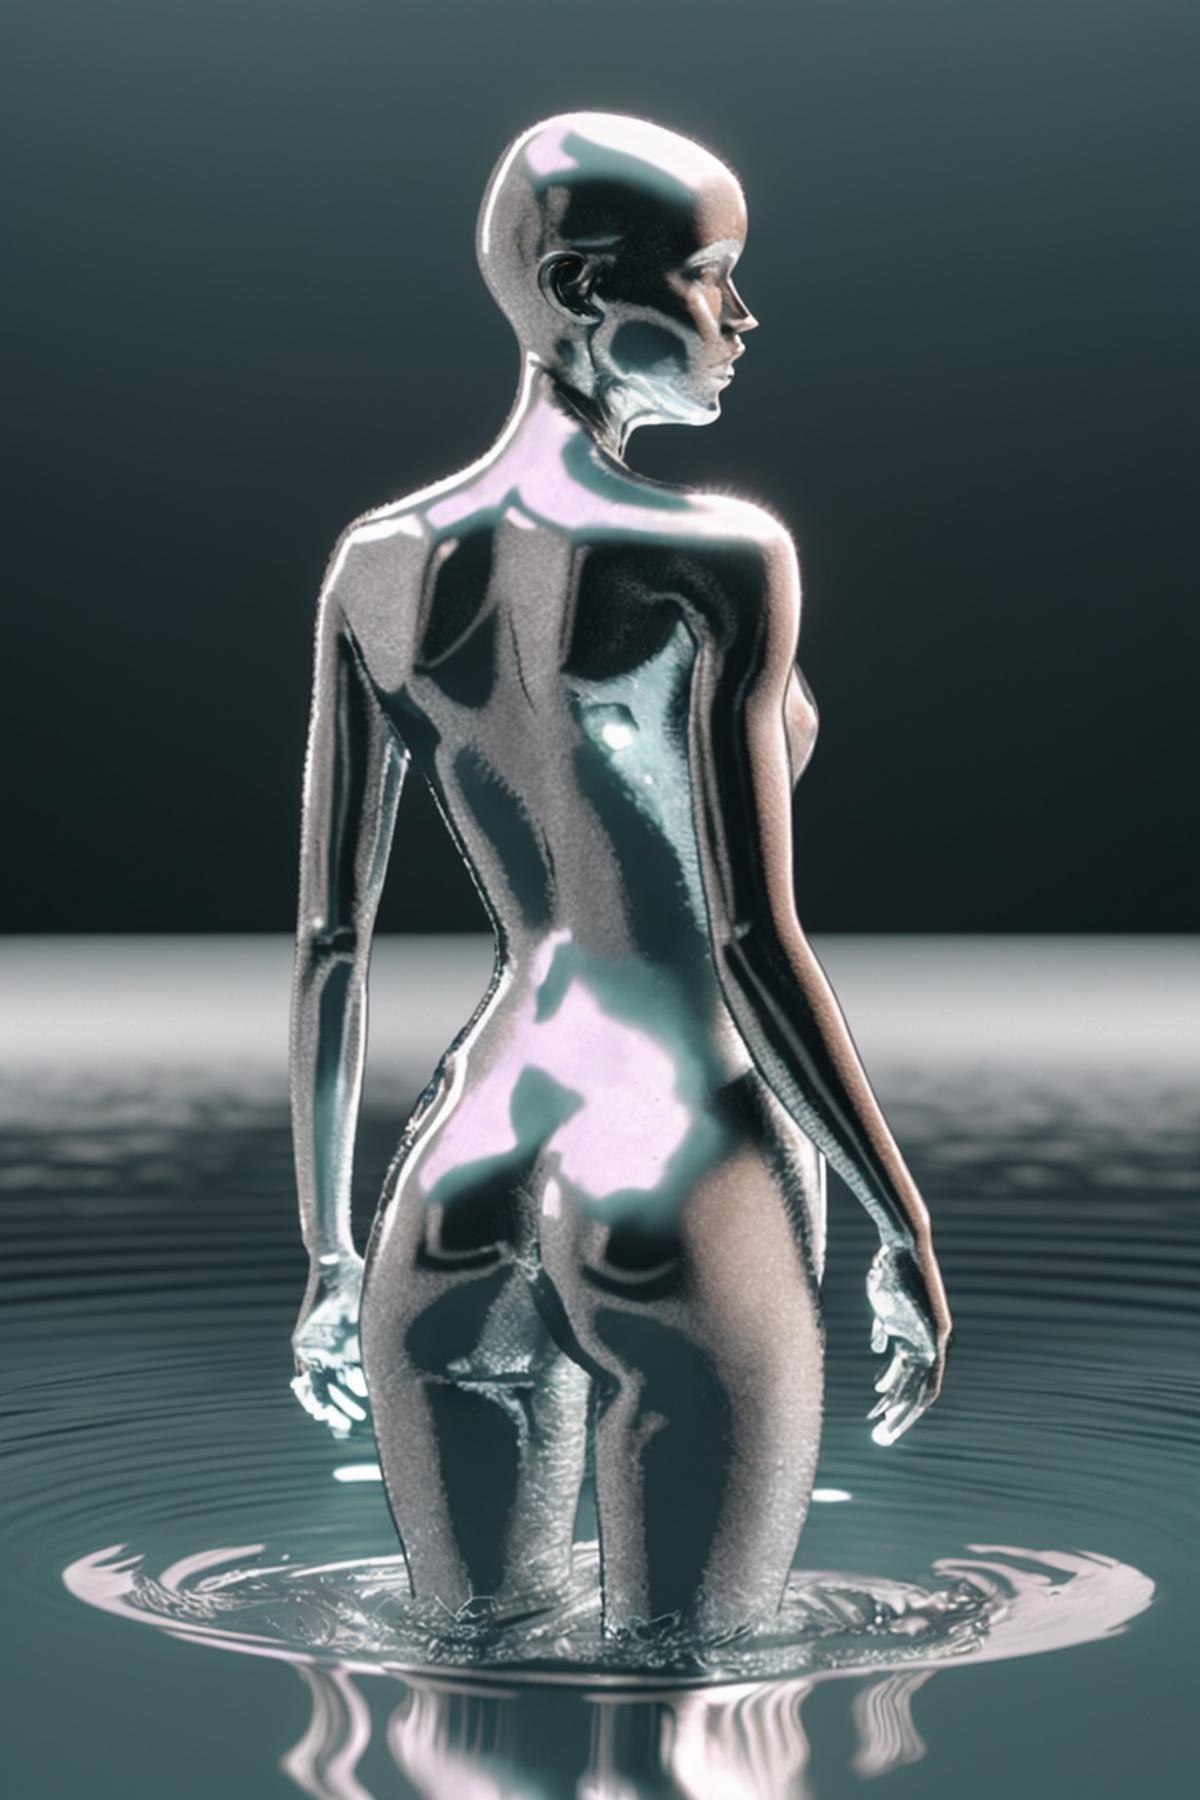 AI model image by Ciro_Negrogni